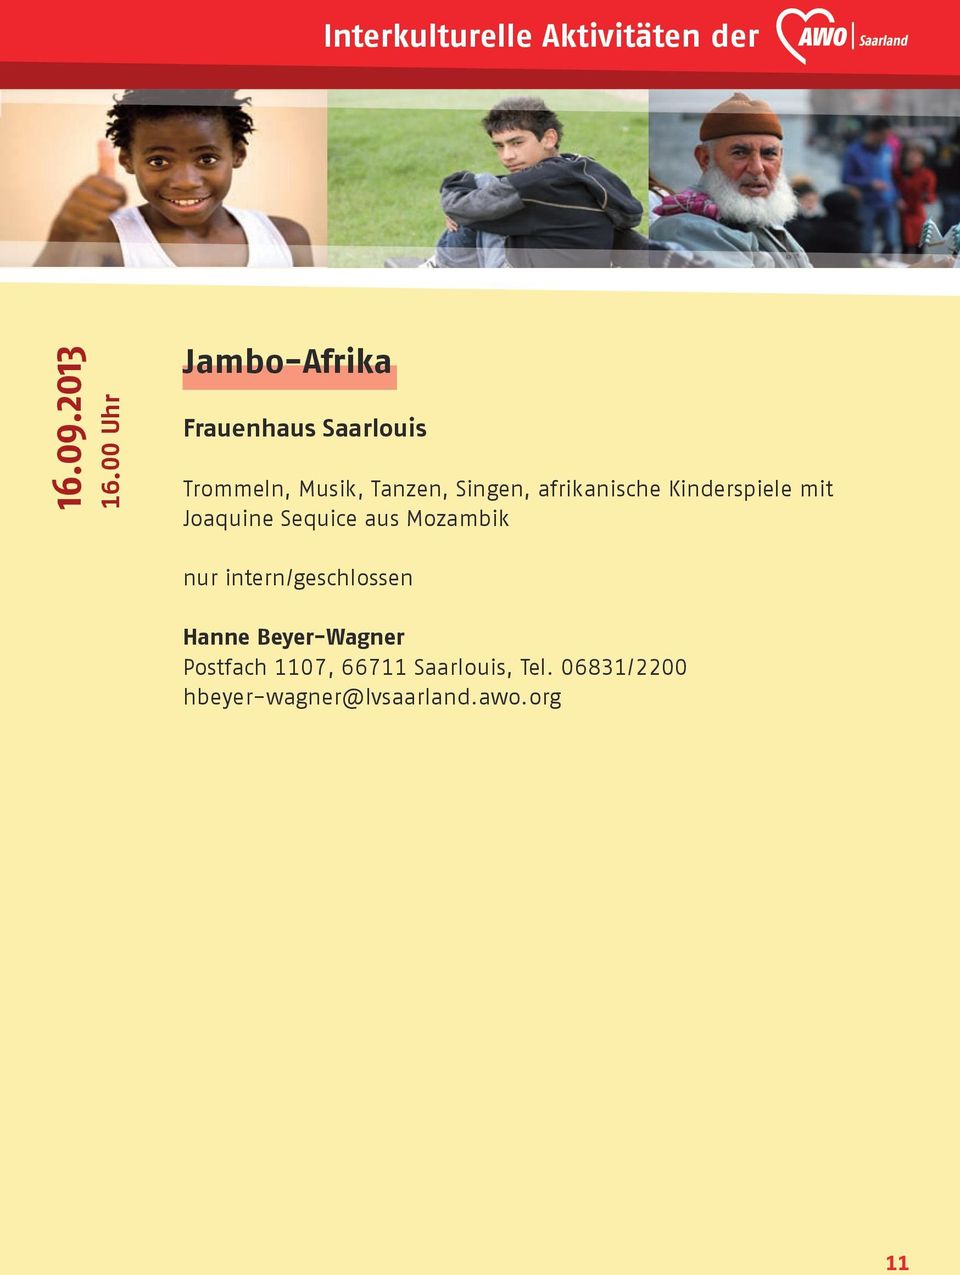 Singen, afrikanische Kinderspiele mit Joaquine Sequice aus Mozambik